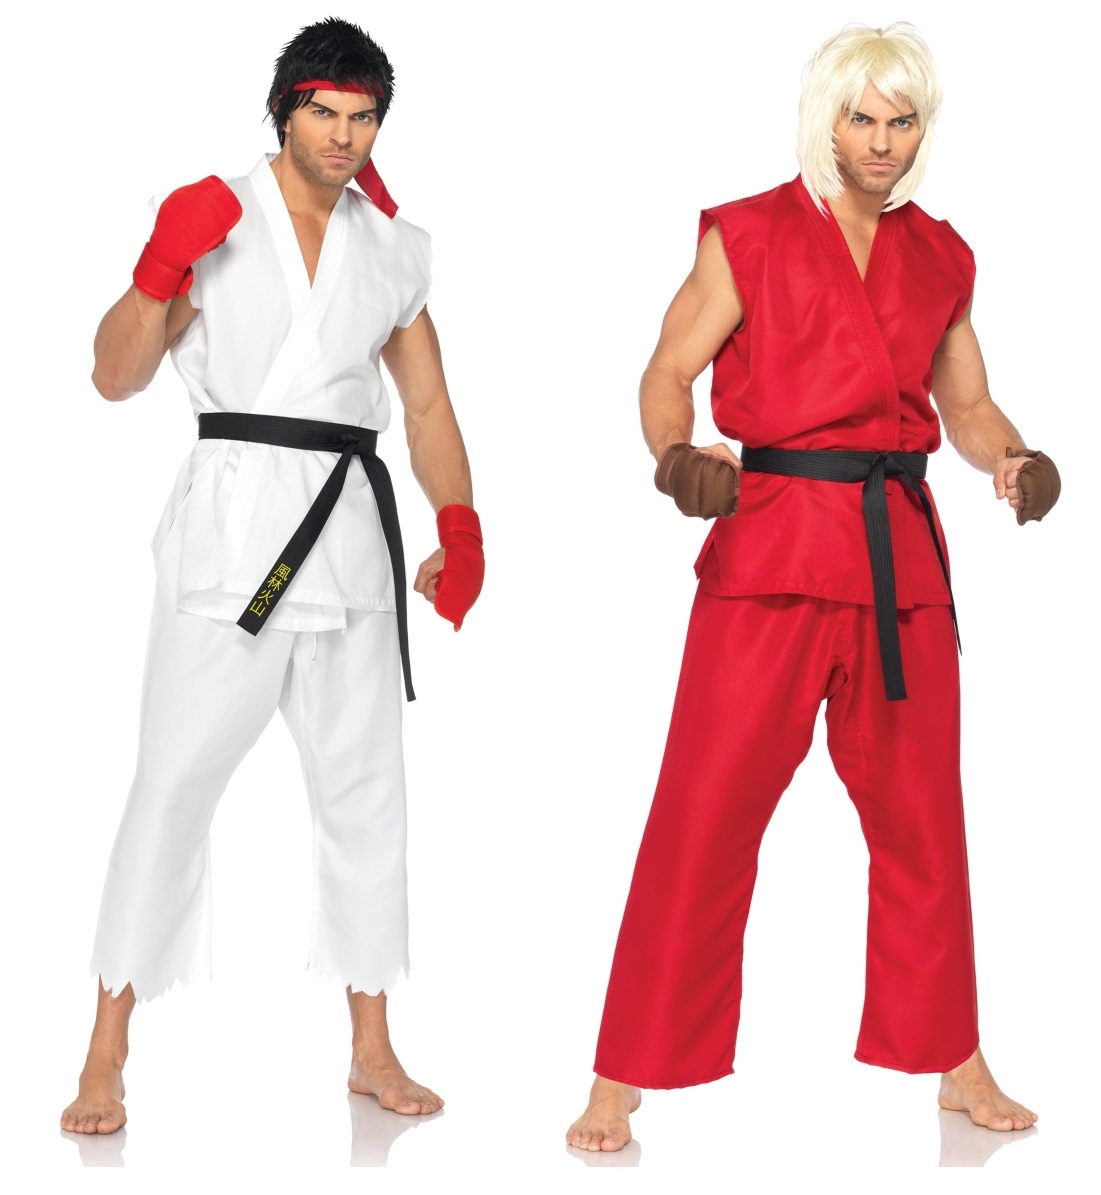  Ken és Ryu Párok jelmezei